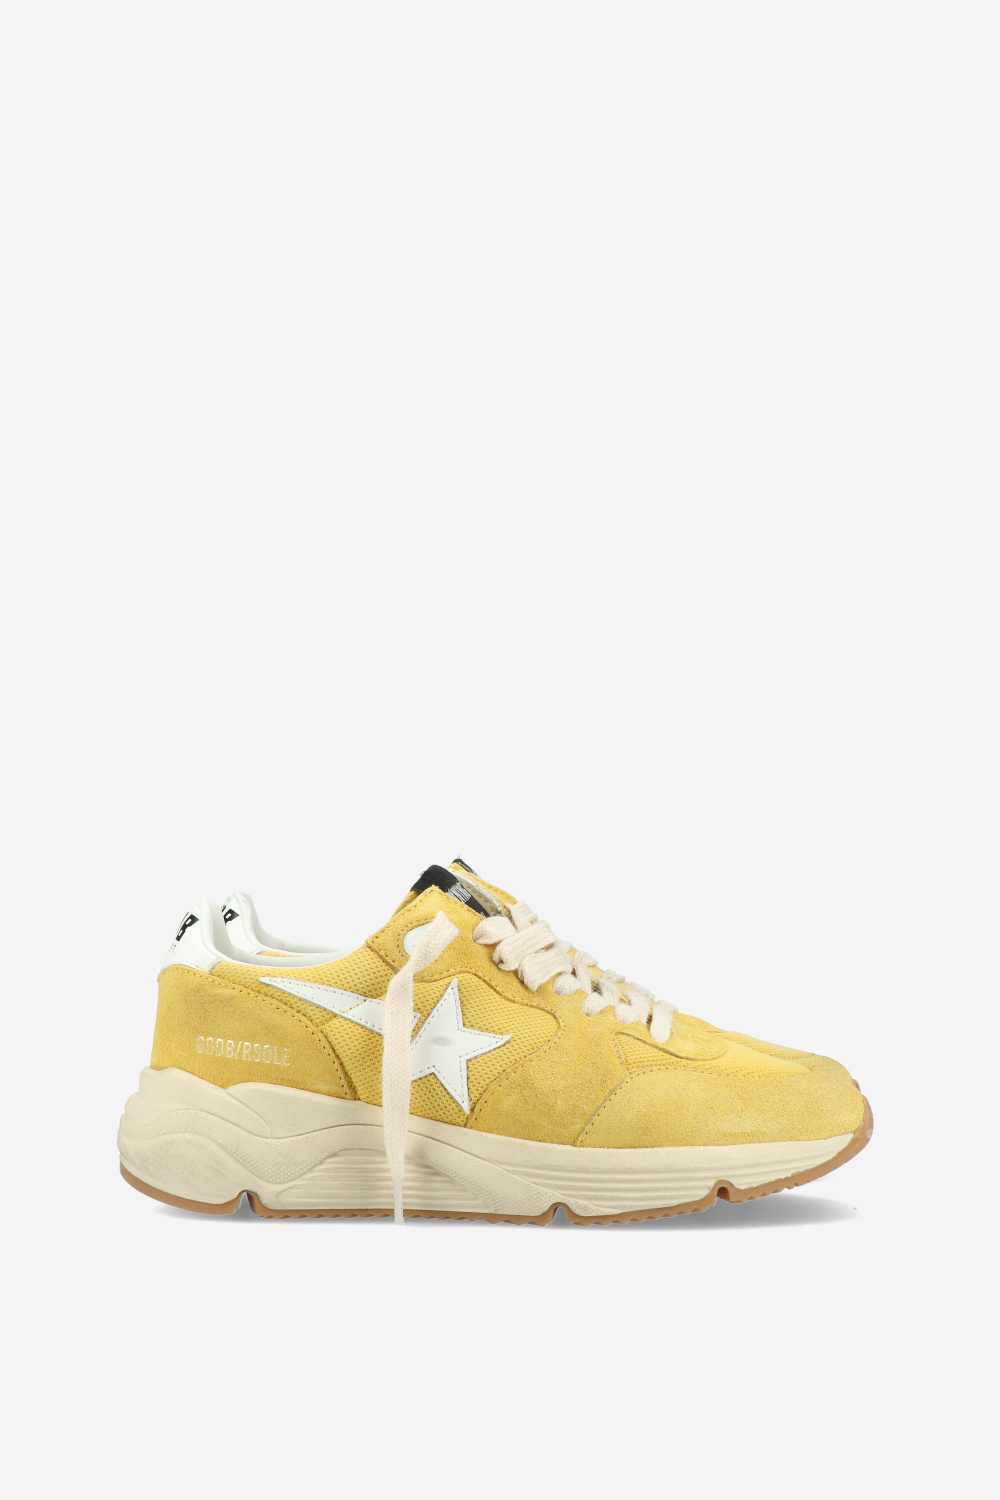 Golden Goose Sneakers Yellow